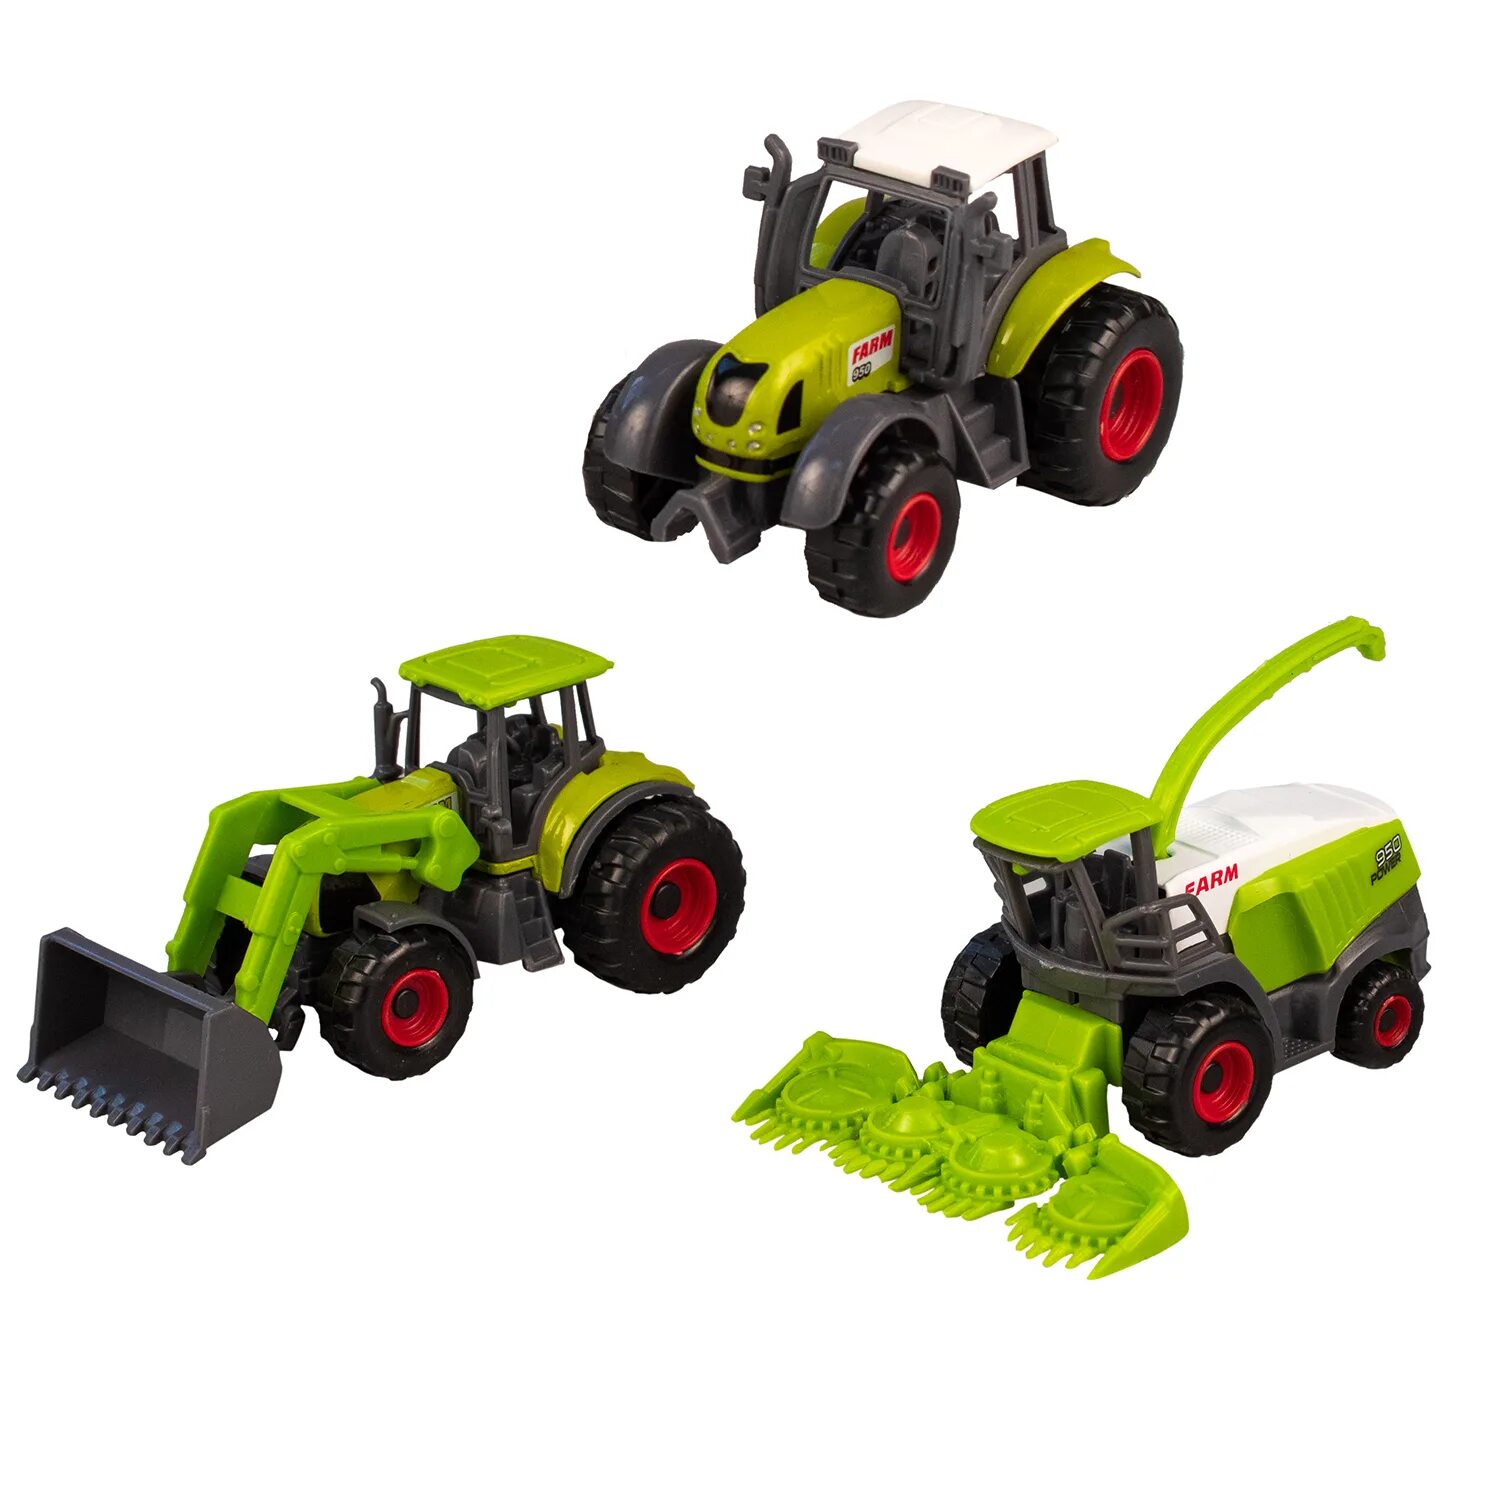 Игровой набор SUNQ Toys тракторы sq820132. Набор металл. Тракторов 3 шт, арт. Sq82013-2. Трактор фермерскийsl Shantiu Yiaheng. Трактор игрушечный trailblazer 706.